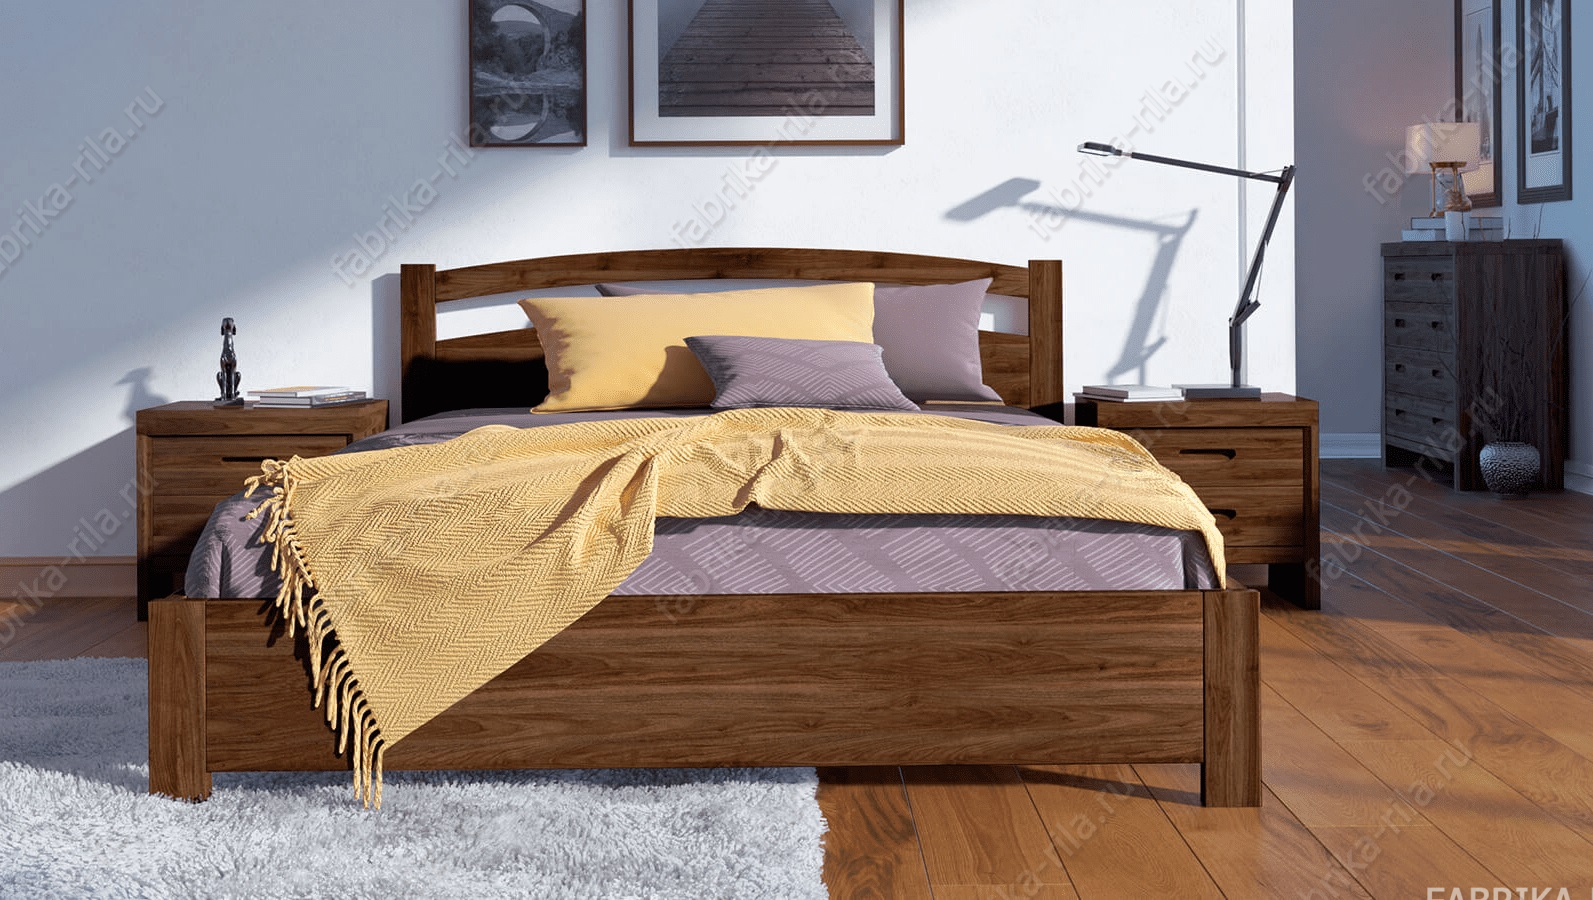 Кровать Nova — 90x190 см. из сосны